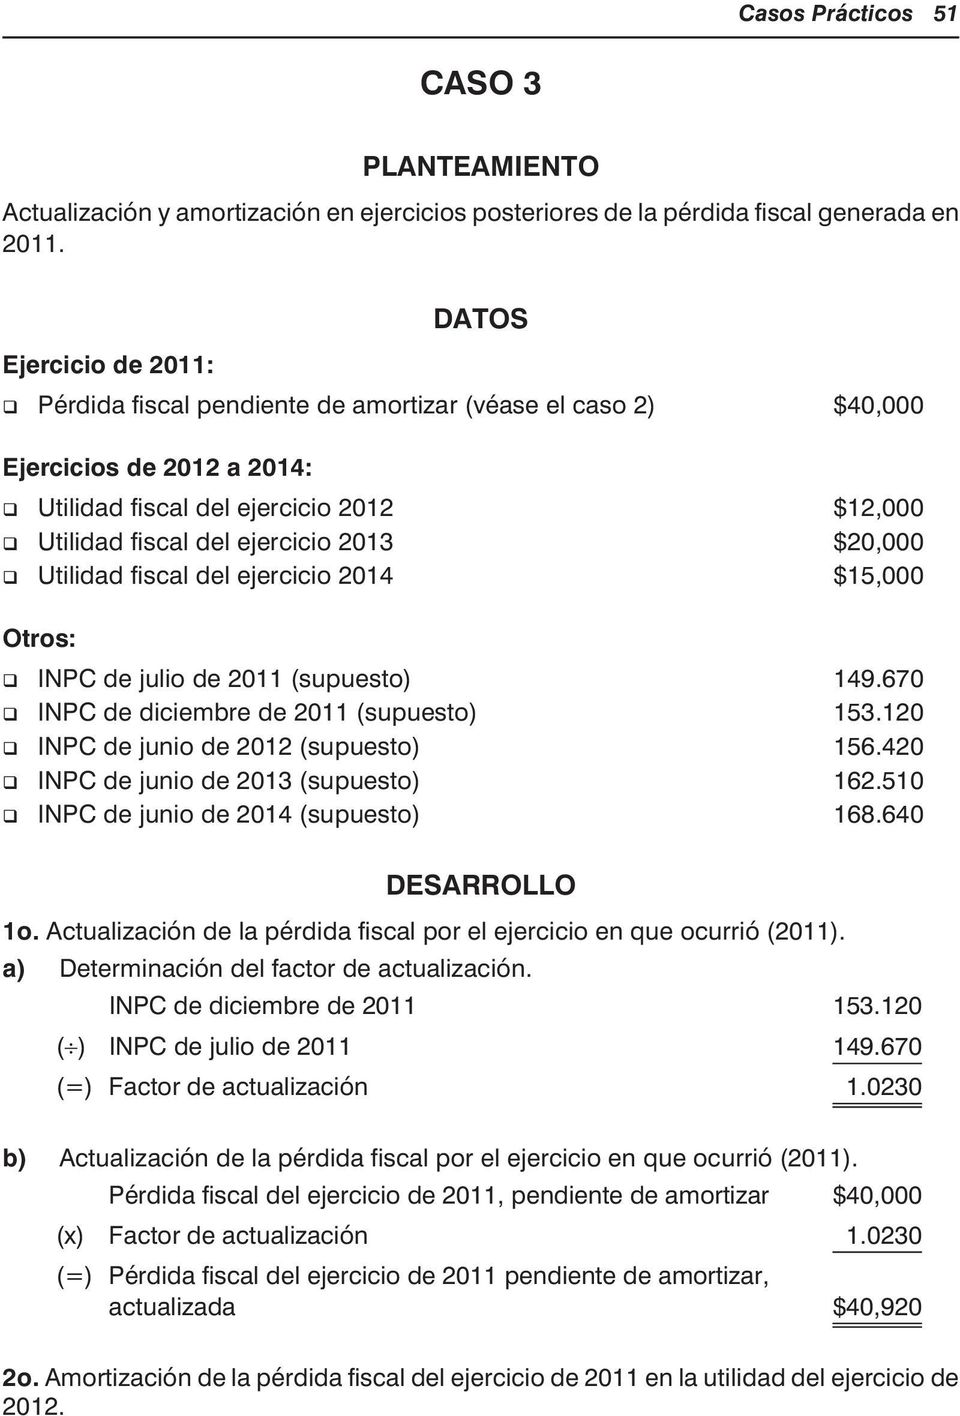 ejer ci cio 2013 $20,000 Uti li dad fis cal del ejer ci cio 2014 $15,000 Otros: INPC de ju lio de 2011 (su pues to) 149.670 INPC de di ciem bre de 2011 (su pues to) 153.